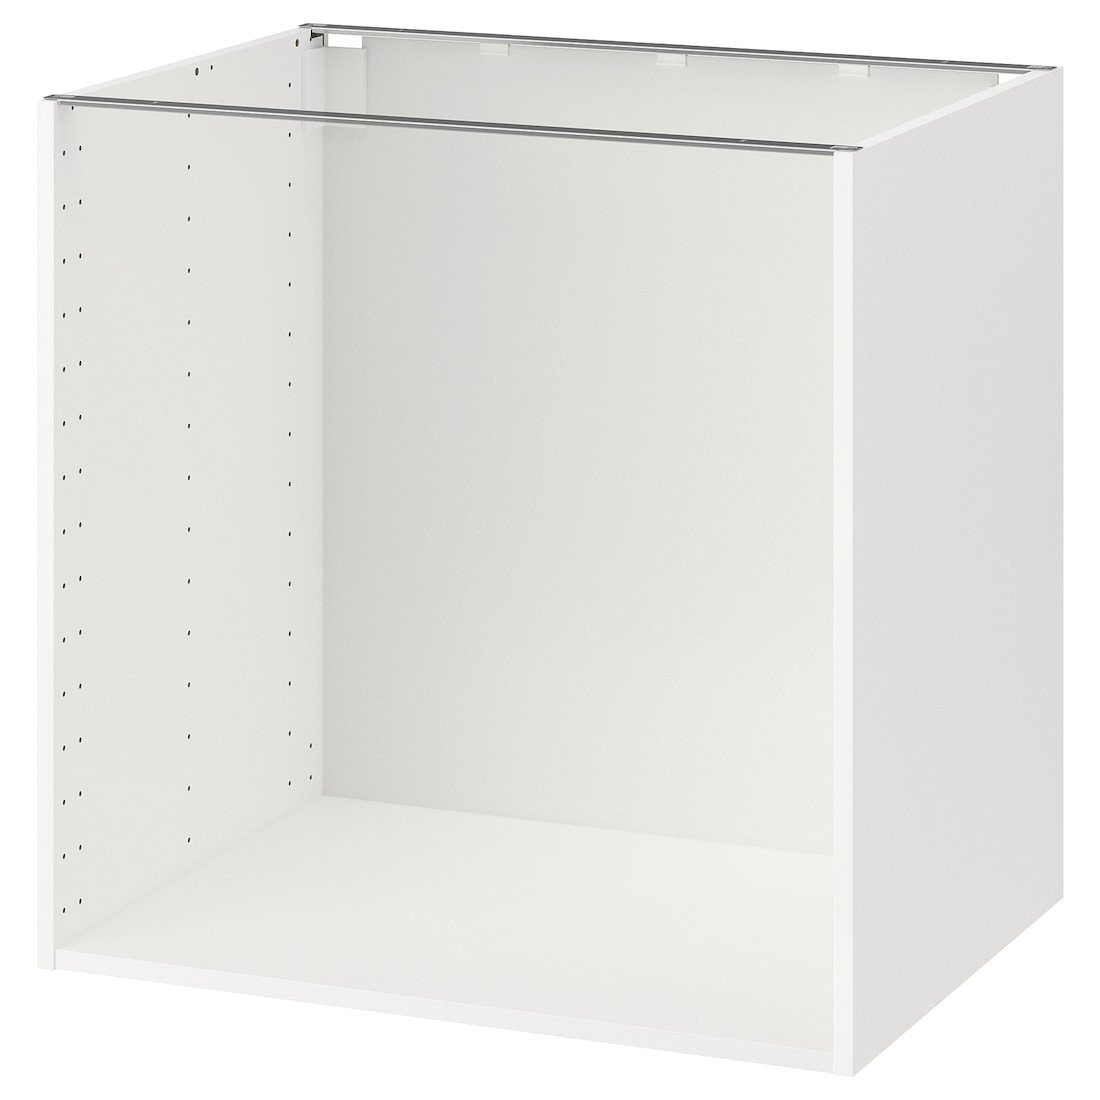 IKEA METOD МЕТОД Каркас підлоговї шафи, білий, 80x60x80 см 10205633 102.056.33